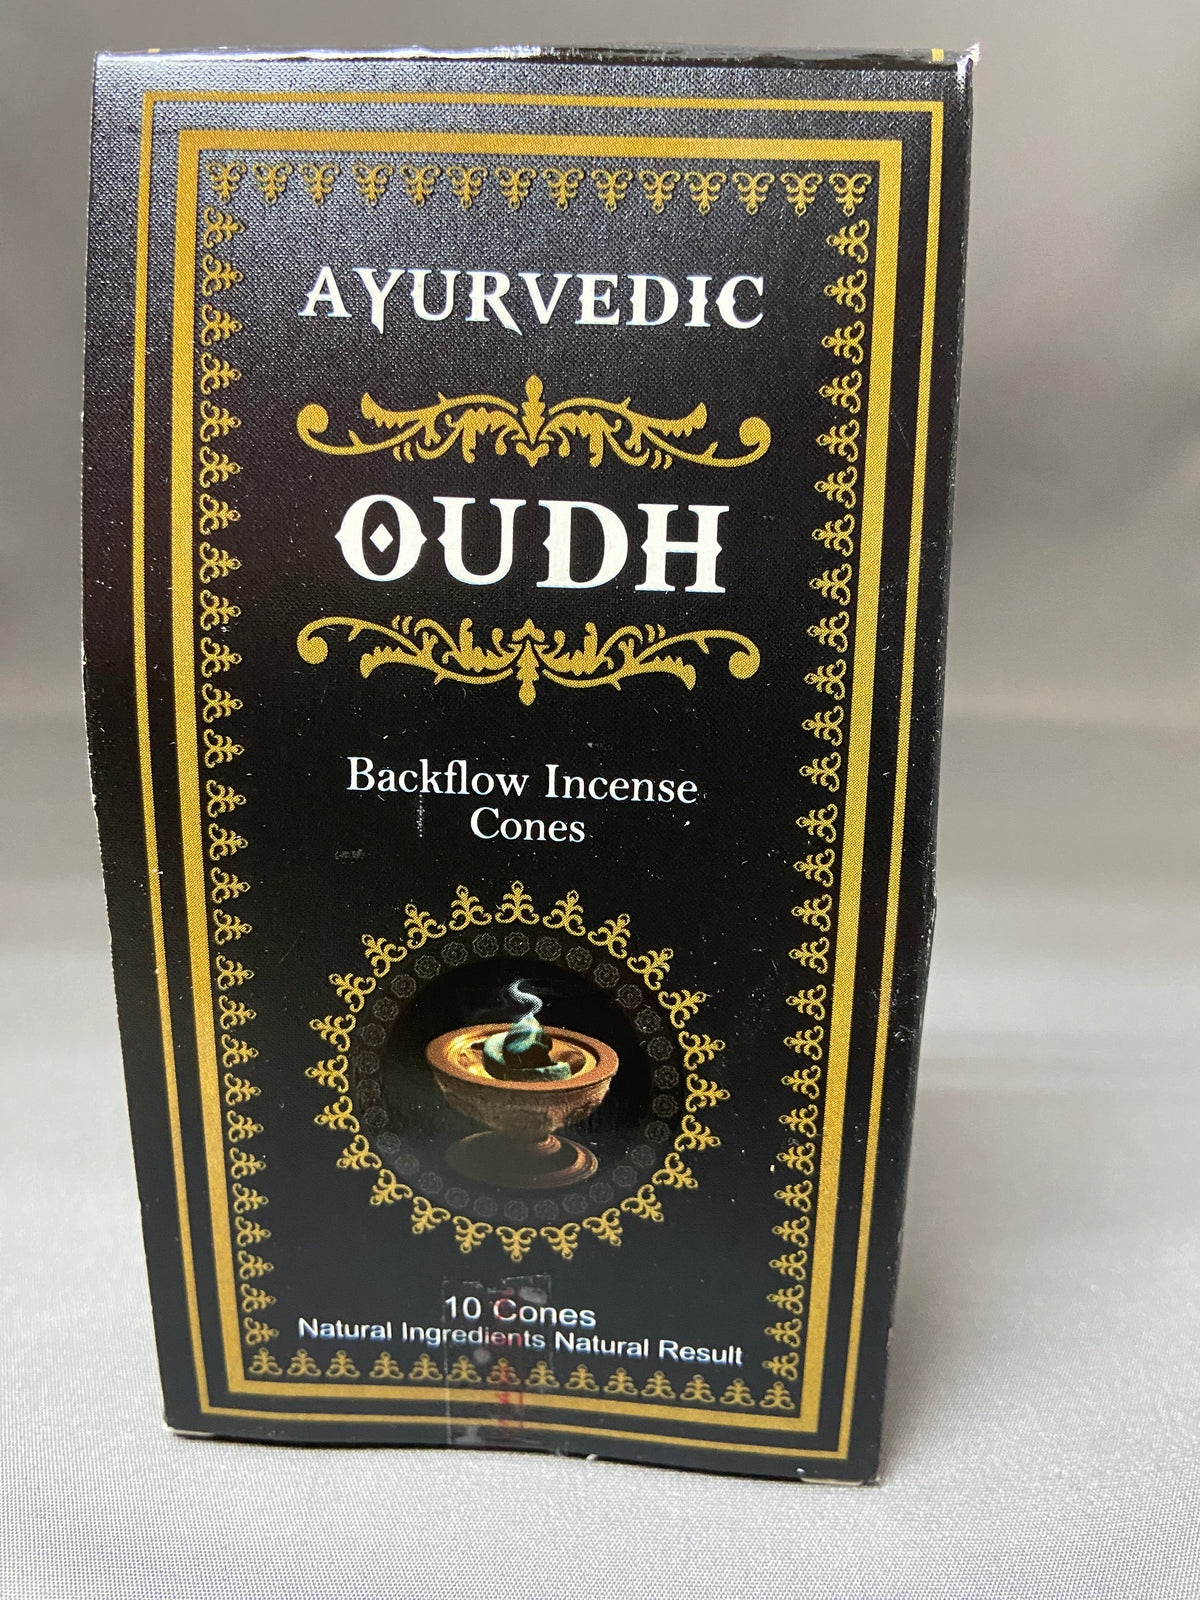 Incense Backflow Cones Ayurvedic/Oudh